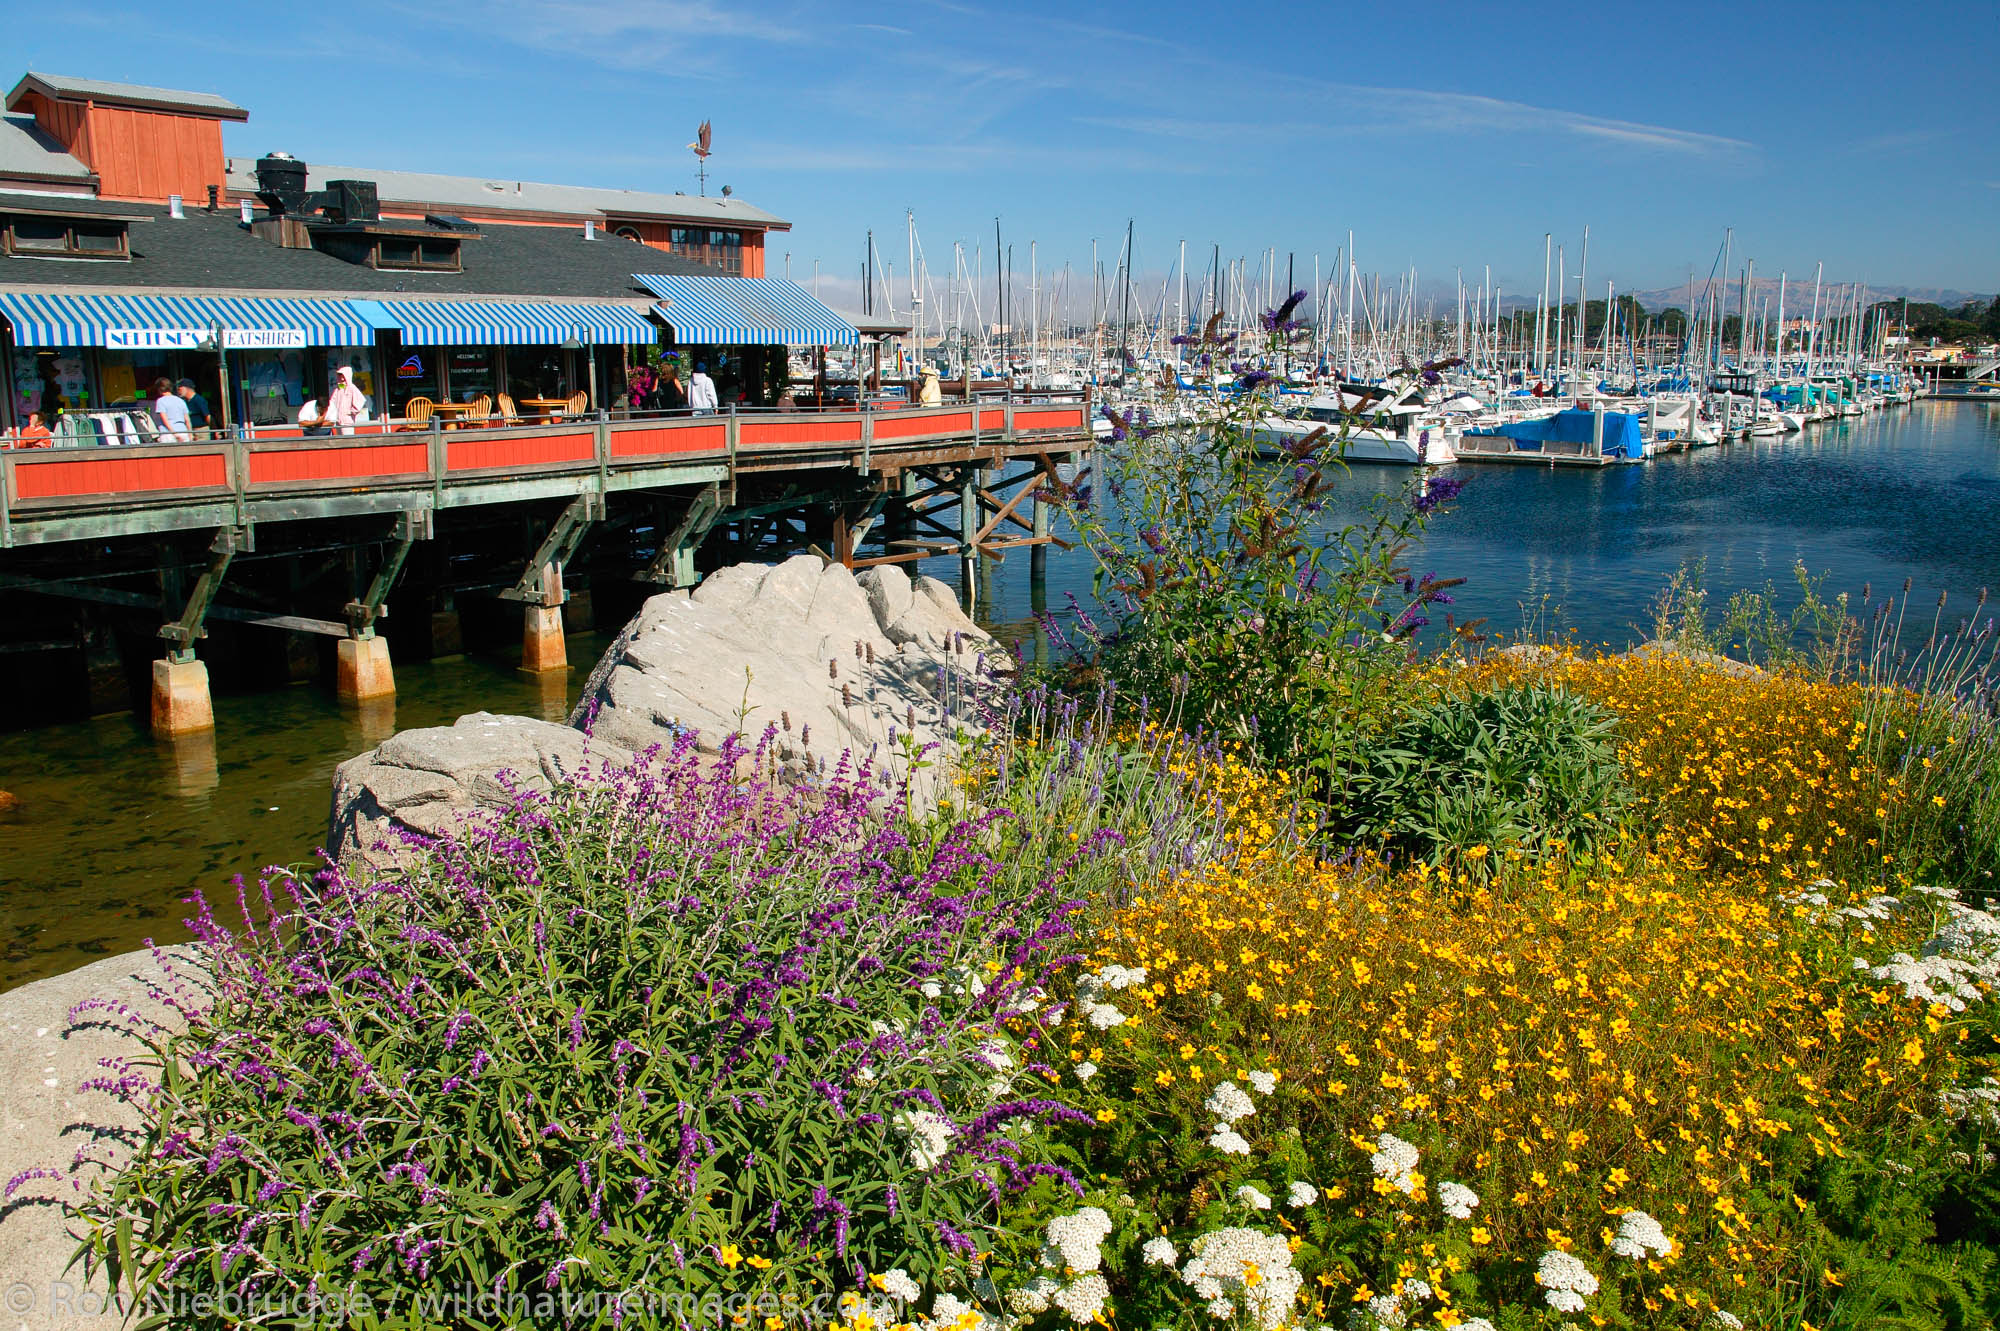 Old Fisherman's Wharf and the Monterey Municipal Marina, Monterey, California.